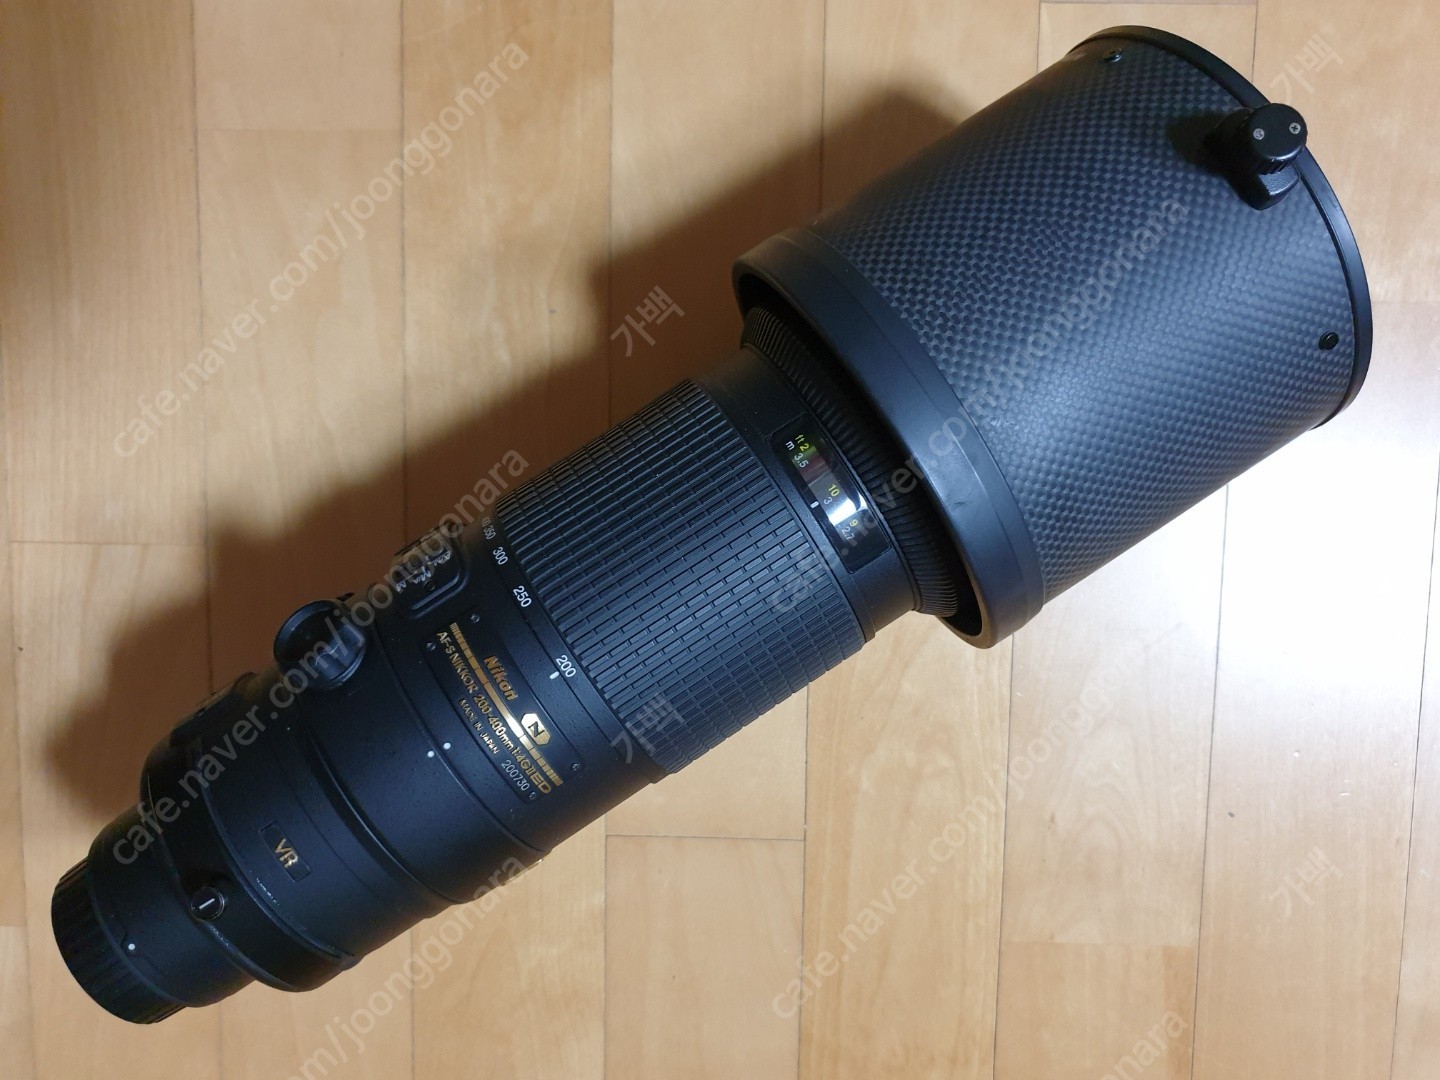 1608731993907.jpg : 니콘 NIKKOR 200-400mm f/4G ED VR II 렌즈(니콘 정품) 판매